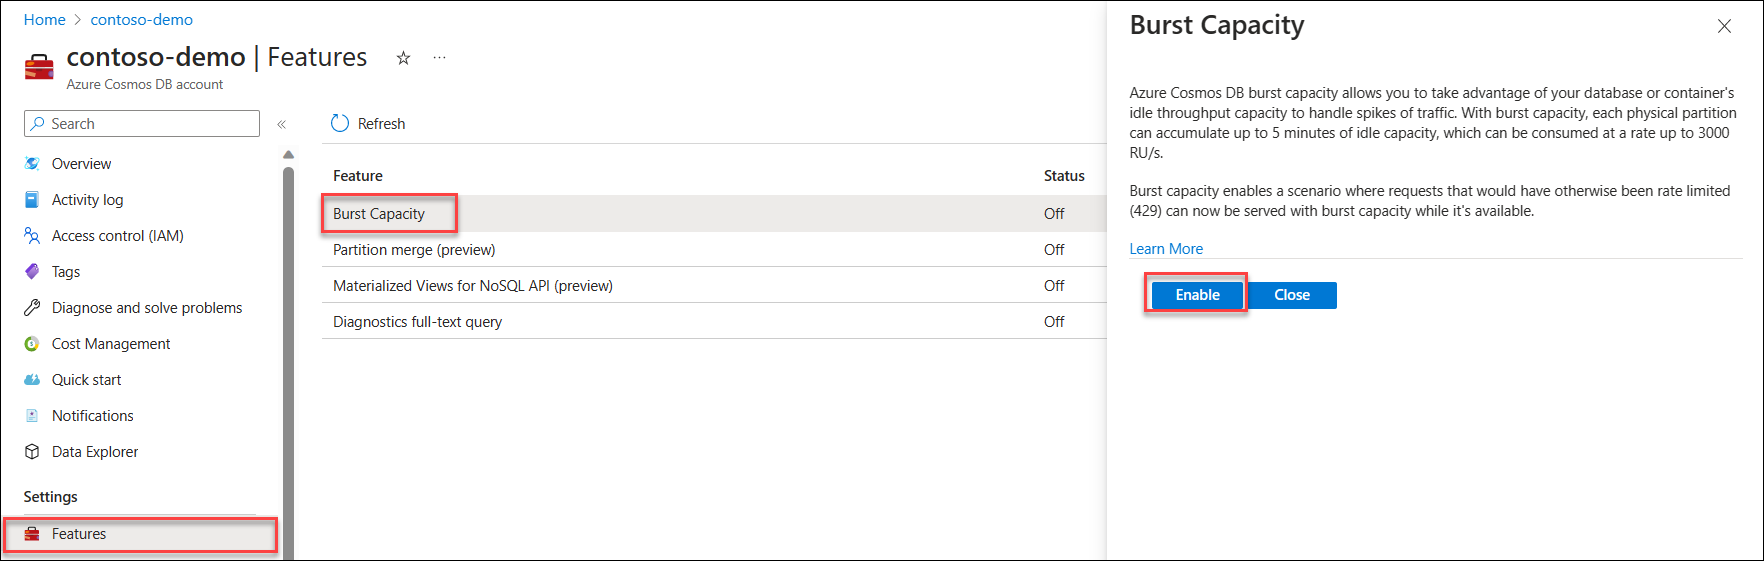 Schermopname van de functie Burst Capacity op de pagina Functies in een Azure Cosmos DB-account.